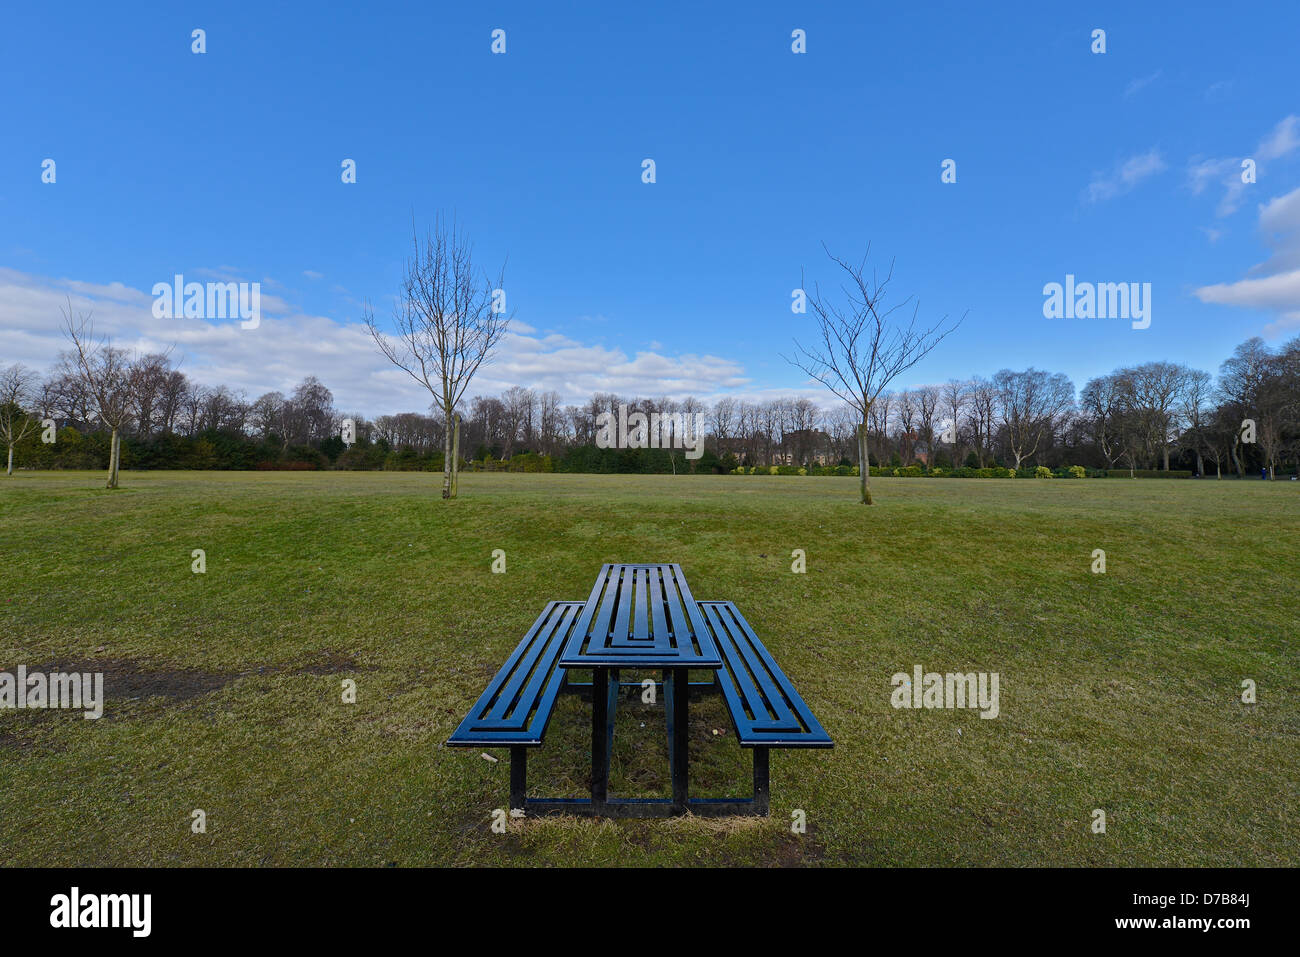 Picnic bench in park Stock Photo